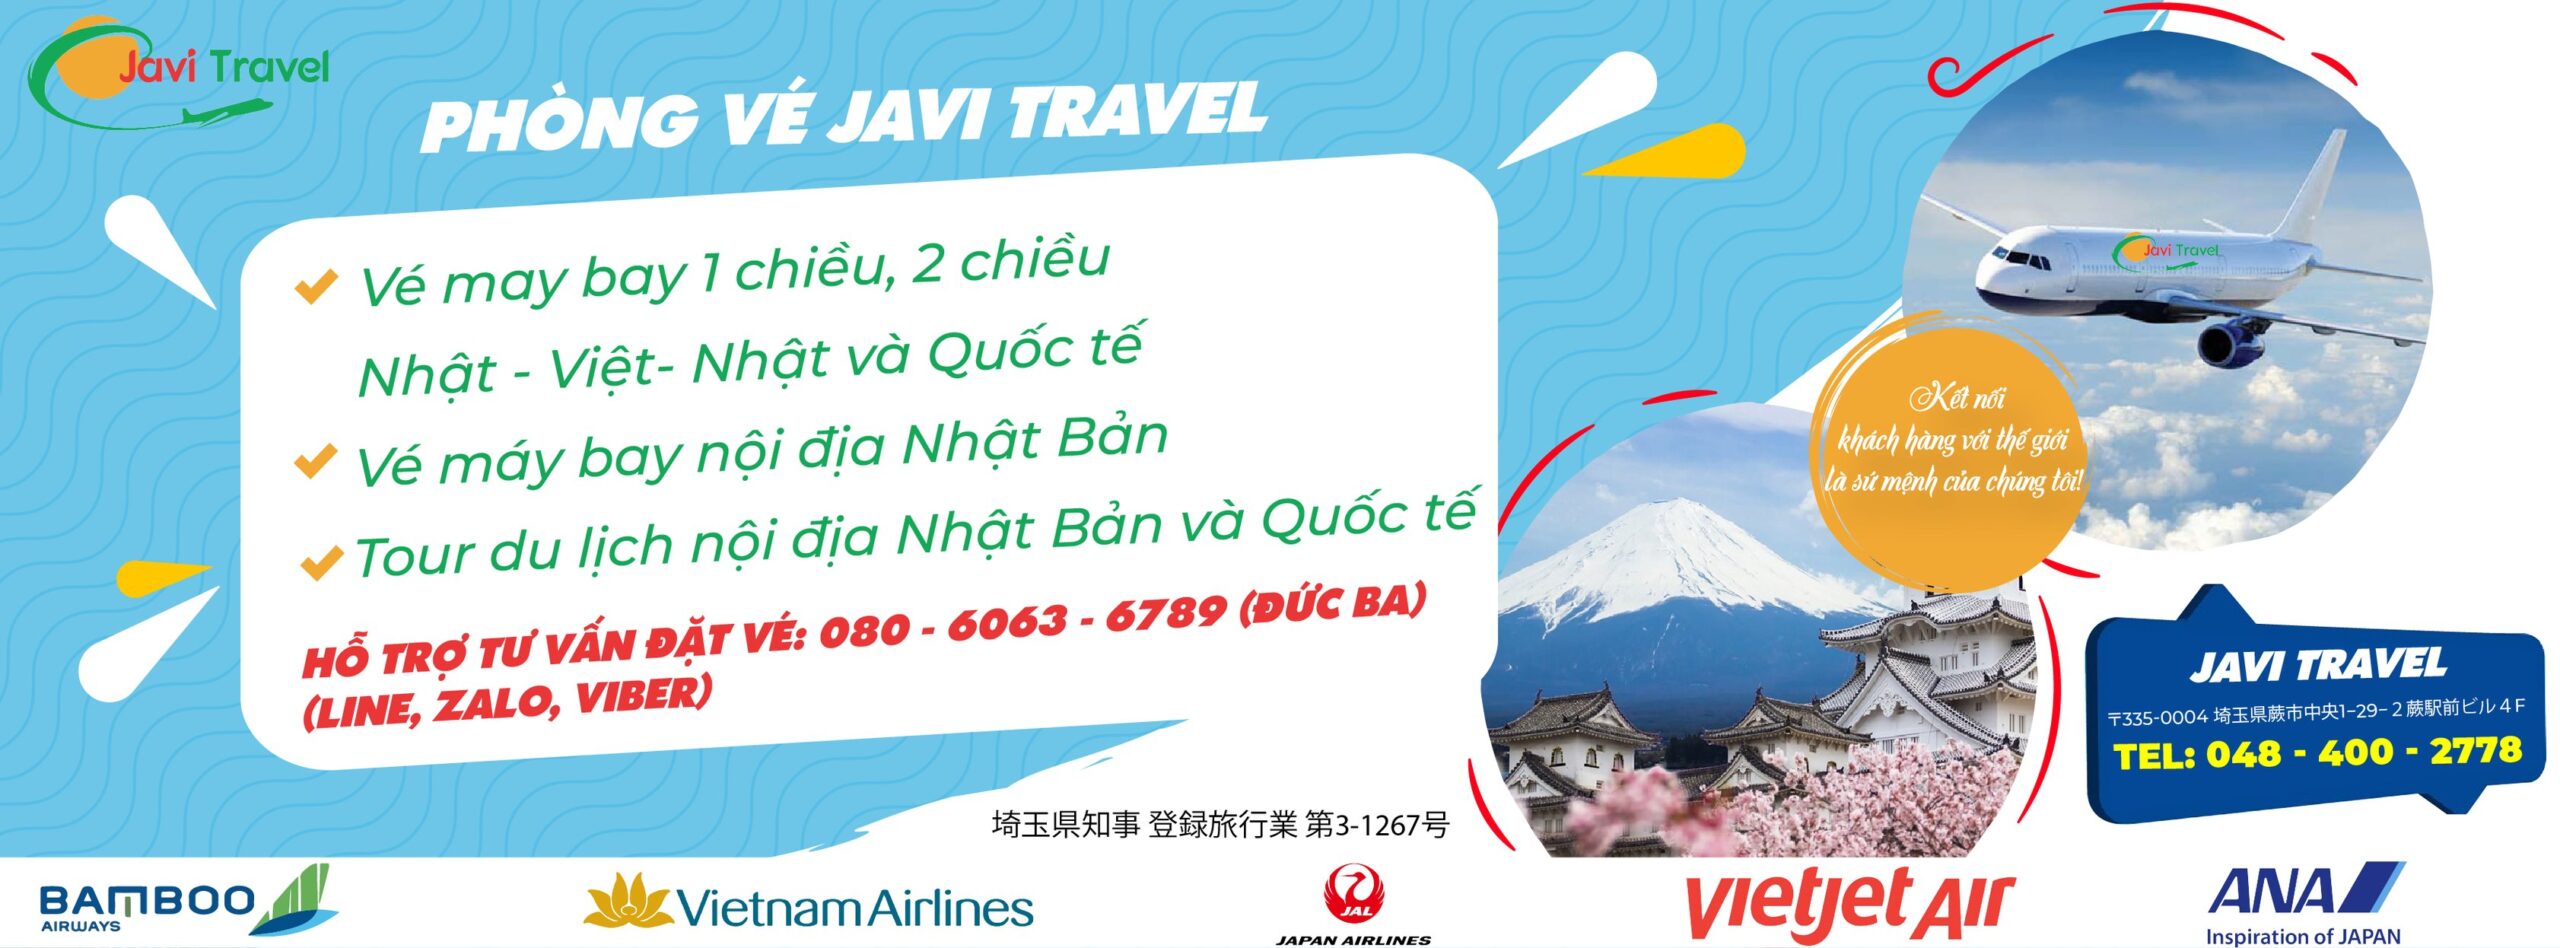 Javi Travel - Đại lý vé máy bay nội địa Nhật Bản - Vé máy bay 1 chiều, khứ hồi Nhật - Việt, Nhật và Quốc Tế